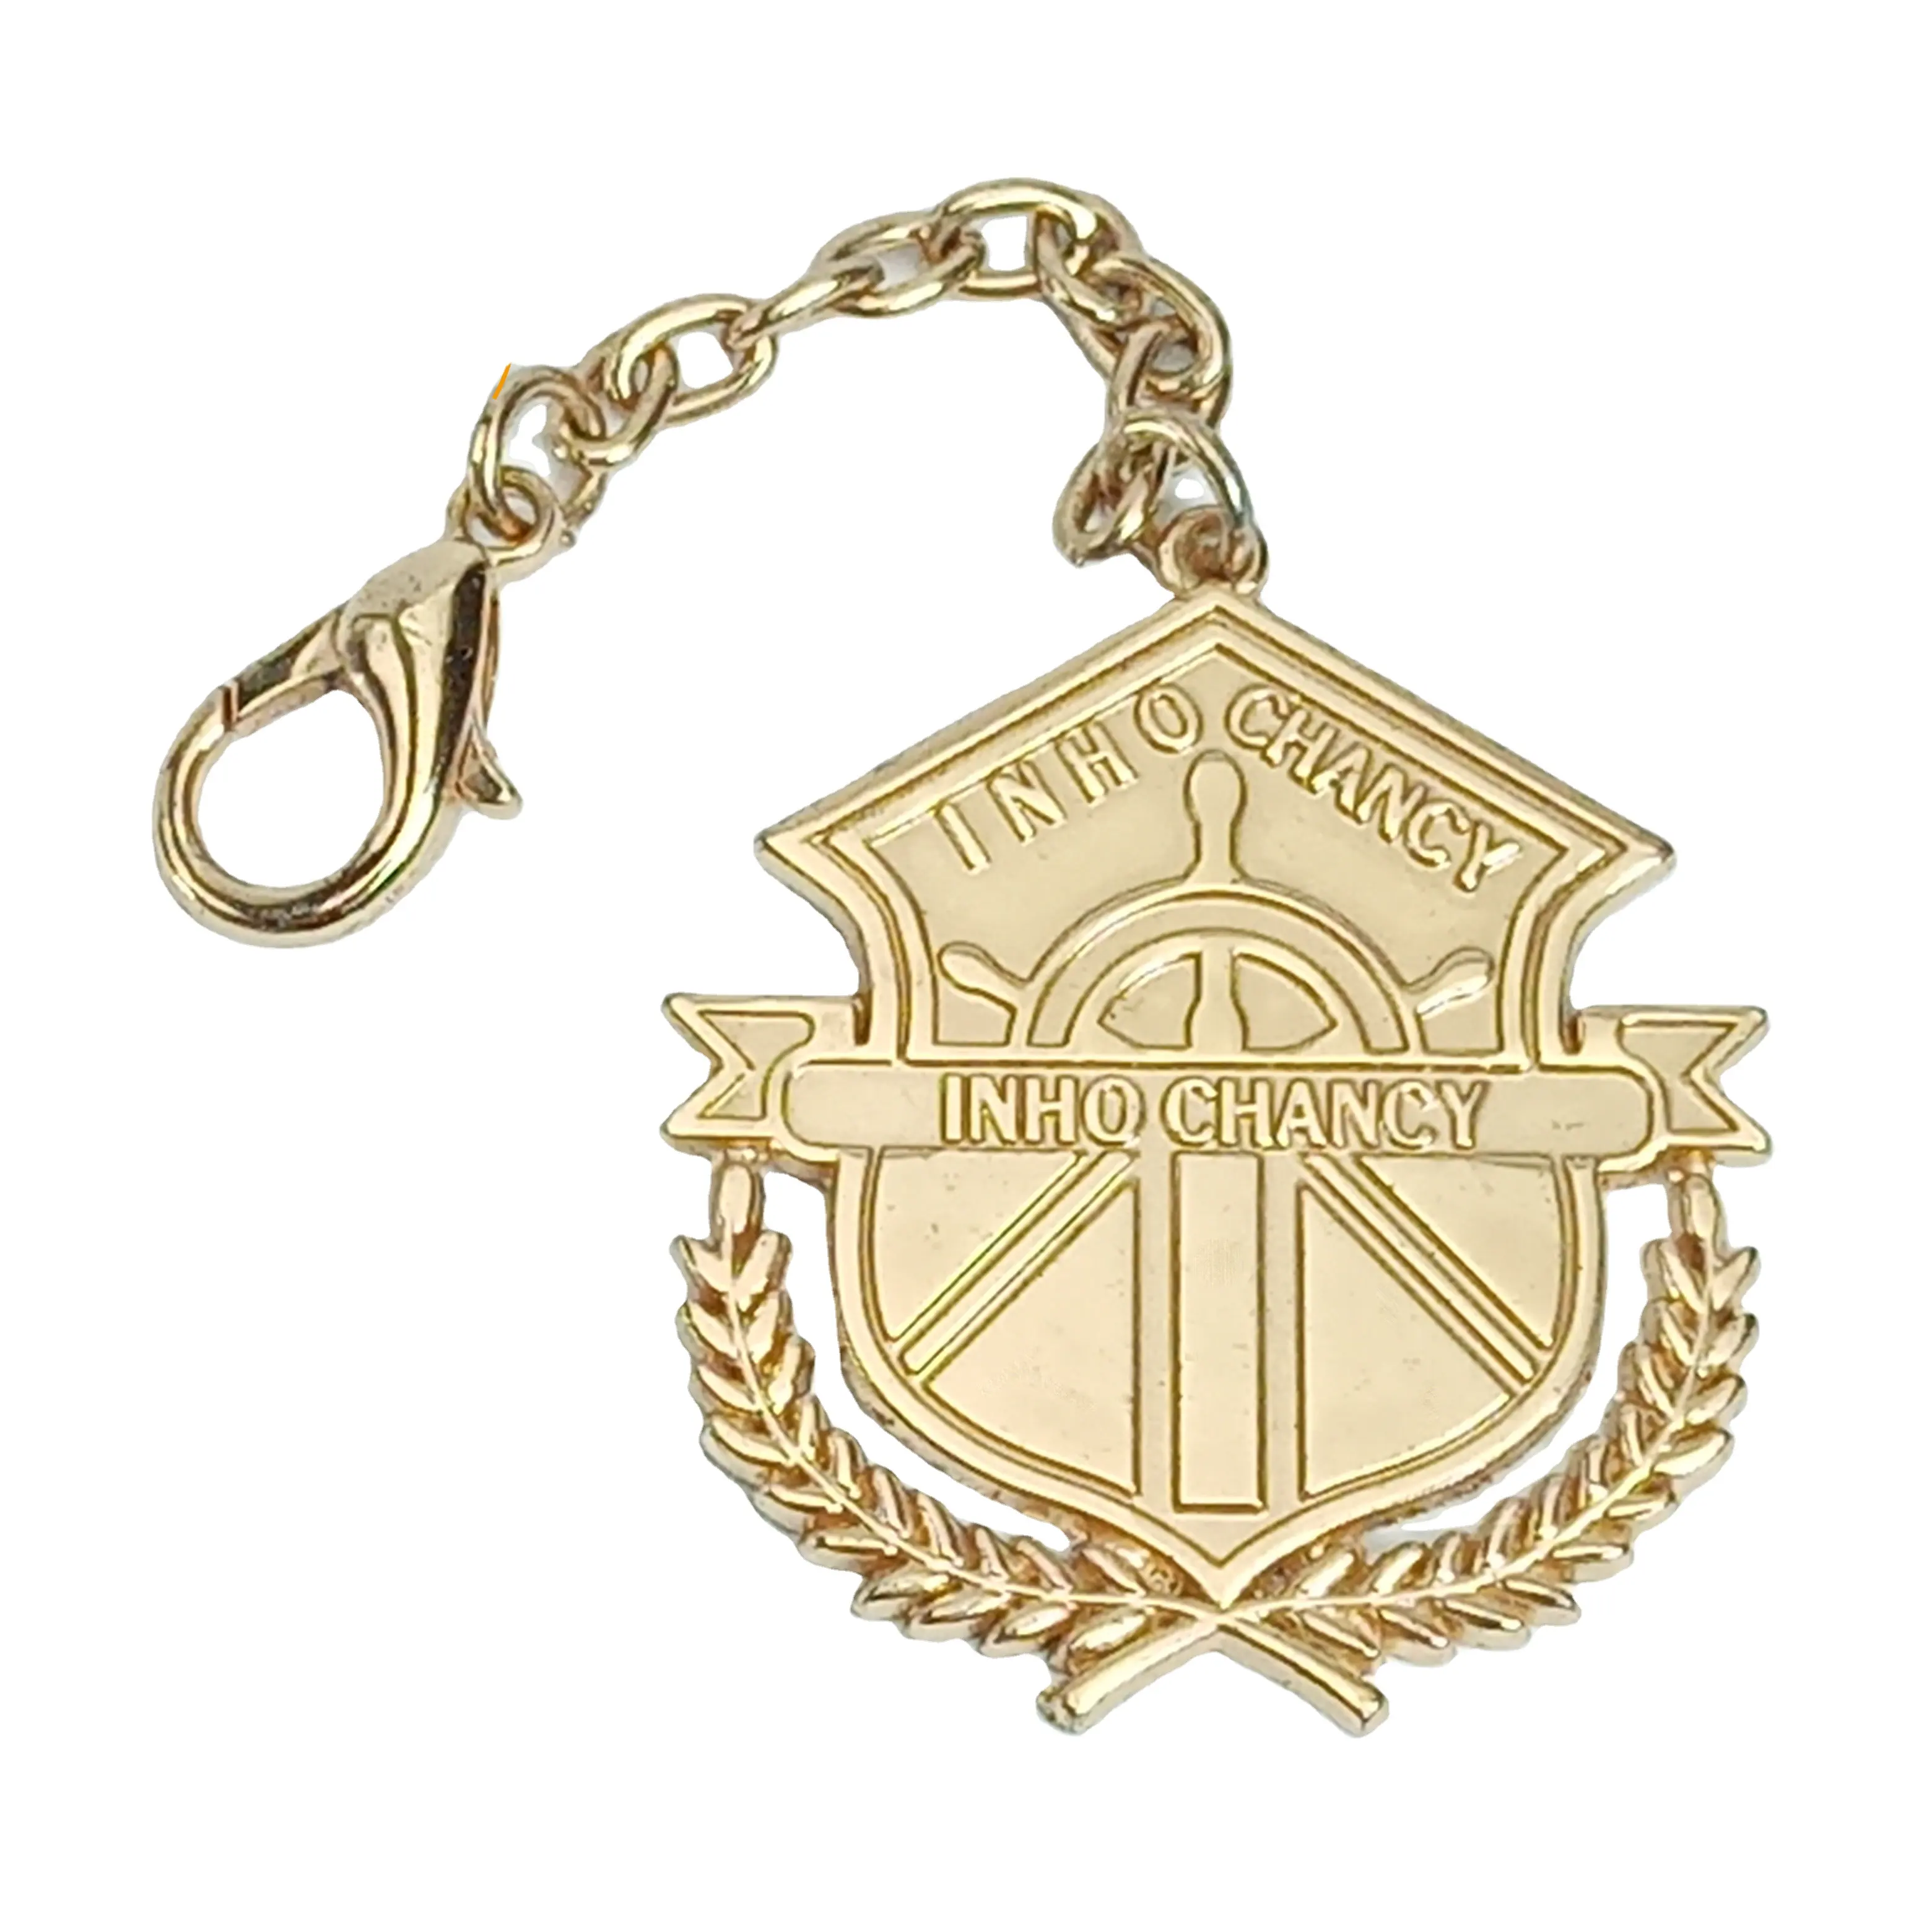 Medaglia di metallo all'ingrosso Design economico tipo di distintivo per souvenir o regali antichi stoccaggio piccolo MOQ prezzo basso alta qualità